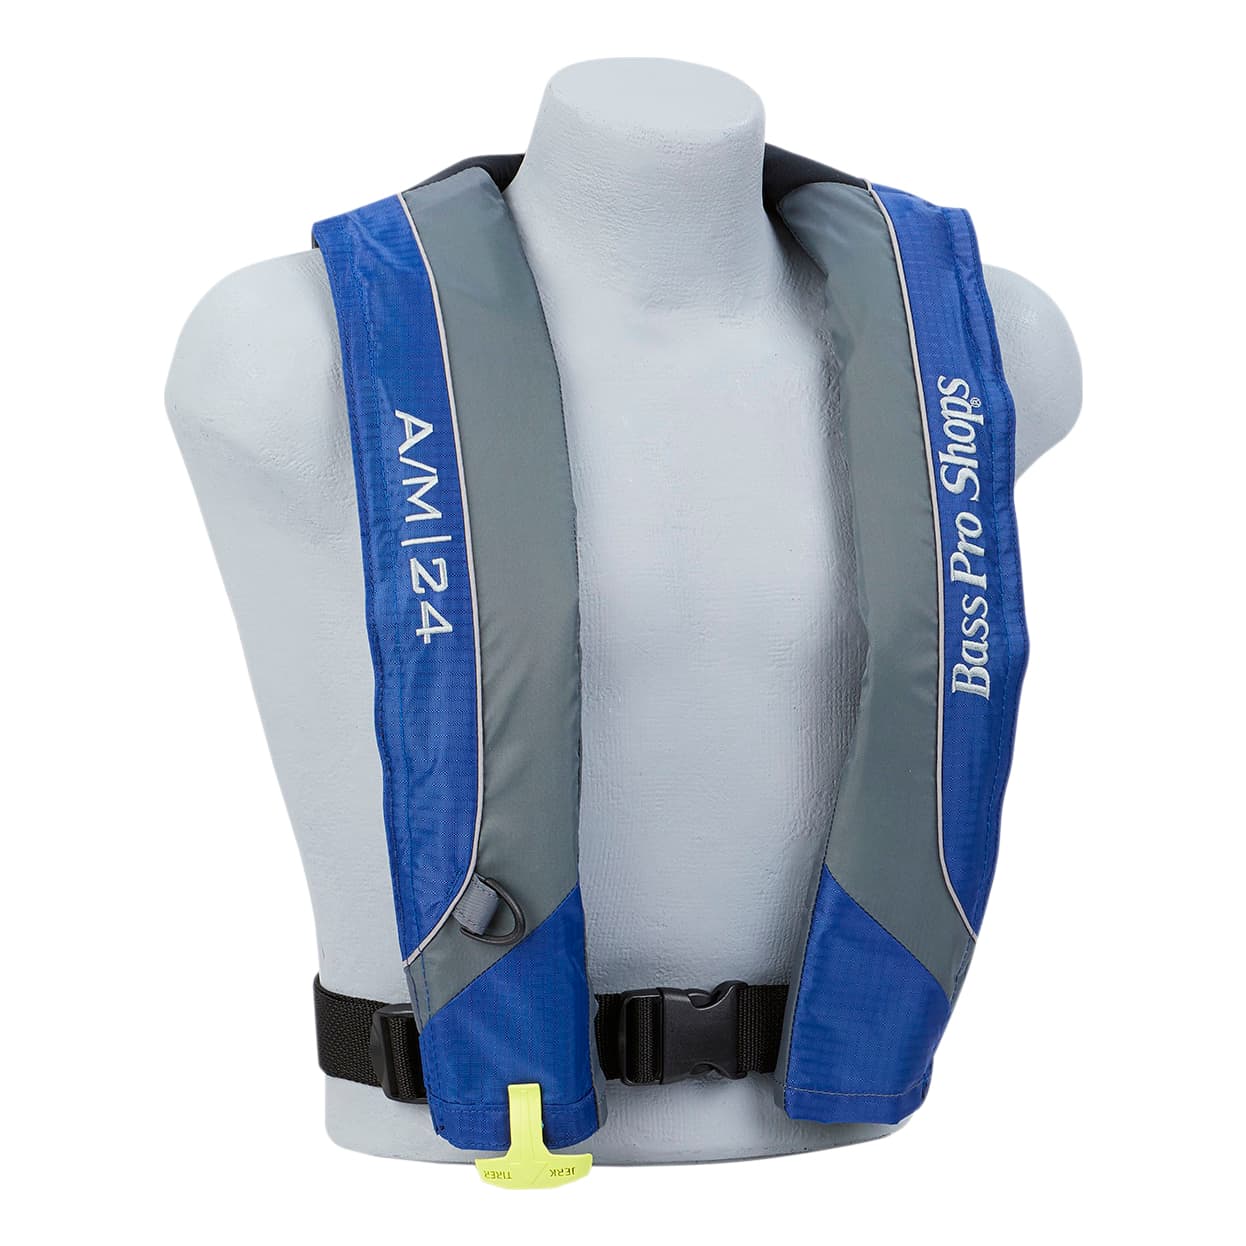 Bass Pro Shops® AM24 Auto/Manual Inflatable Life Vest - Blue